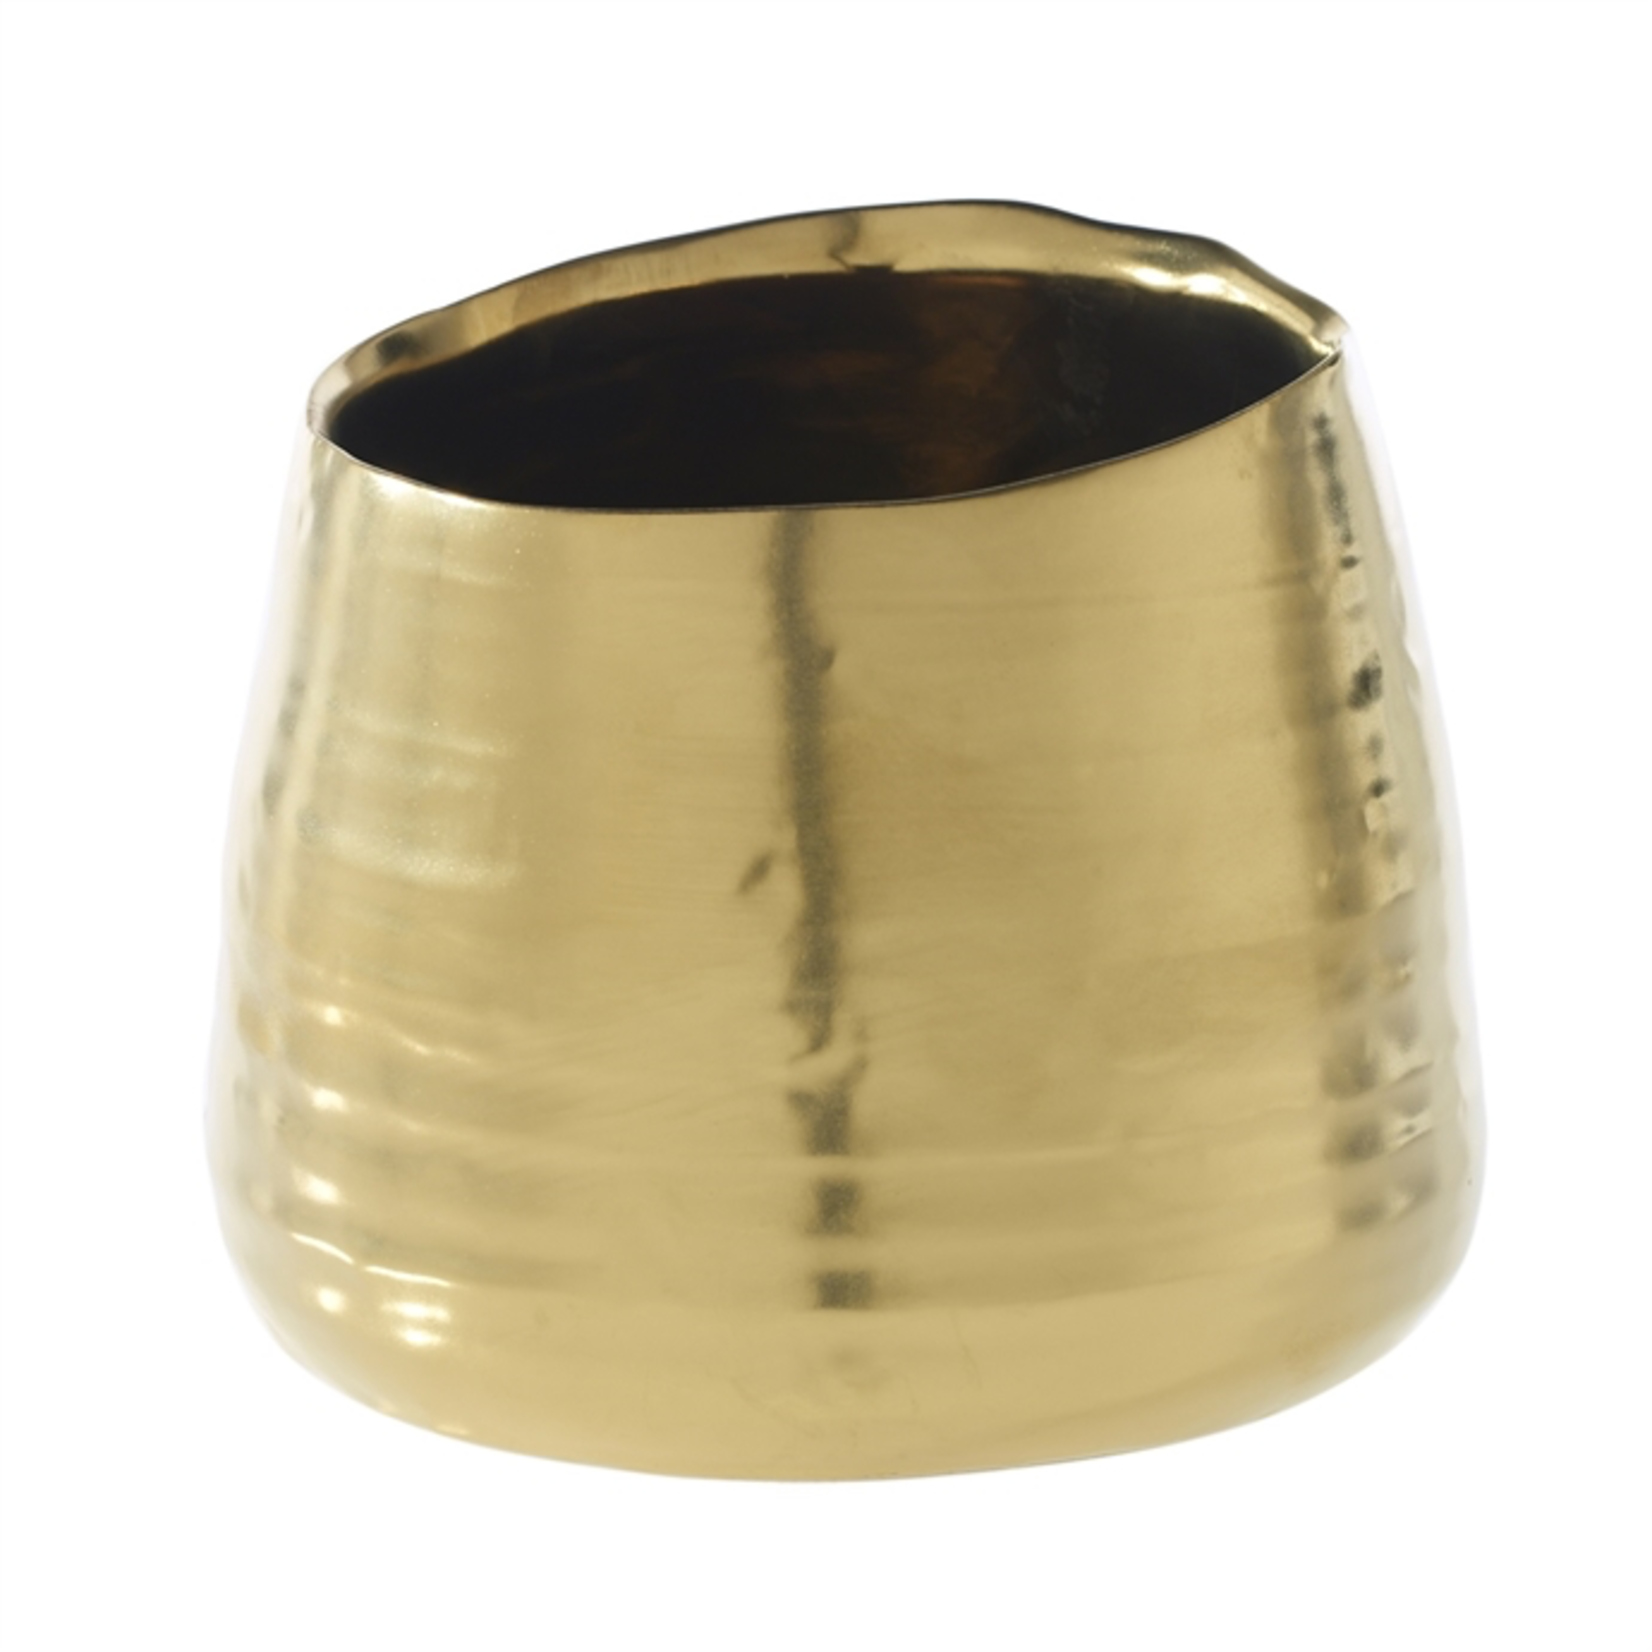 5.5" x 4.5" GOLD Tegan Pot and Vase (AD)